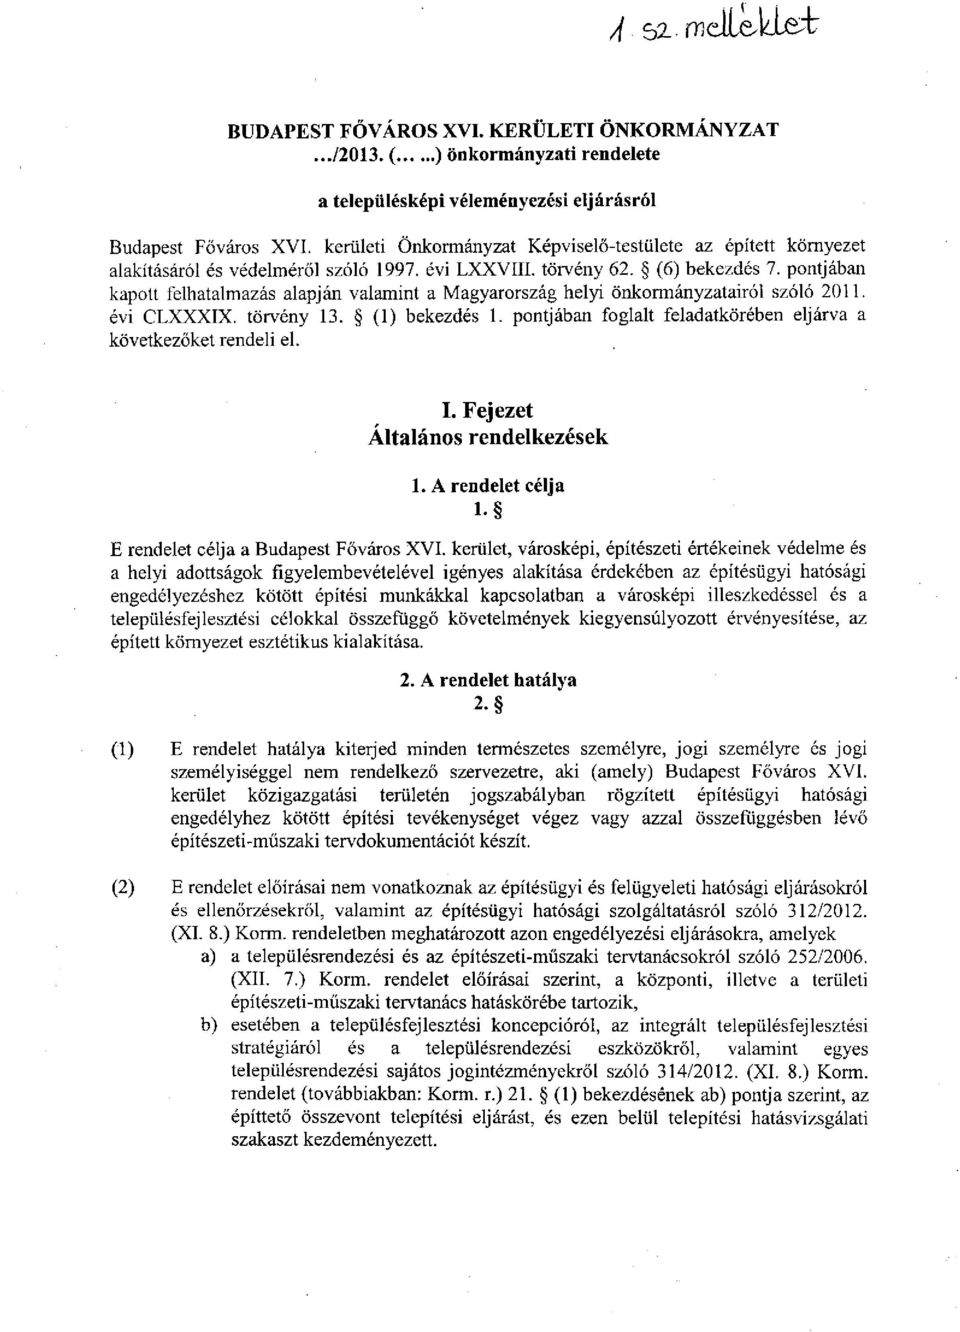 pontjában kapott felhatalmazás alapján valamint a Magyarország helyi önkormányzatairól szóló 2011. évi CLXXXIX. törvény 13. (1) bekezdés 1.